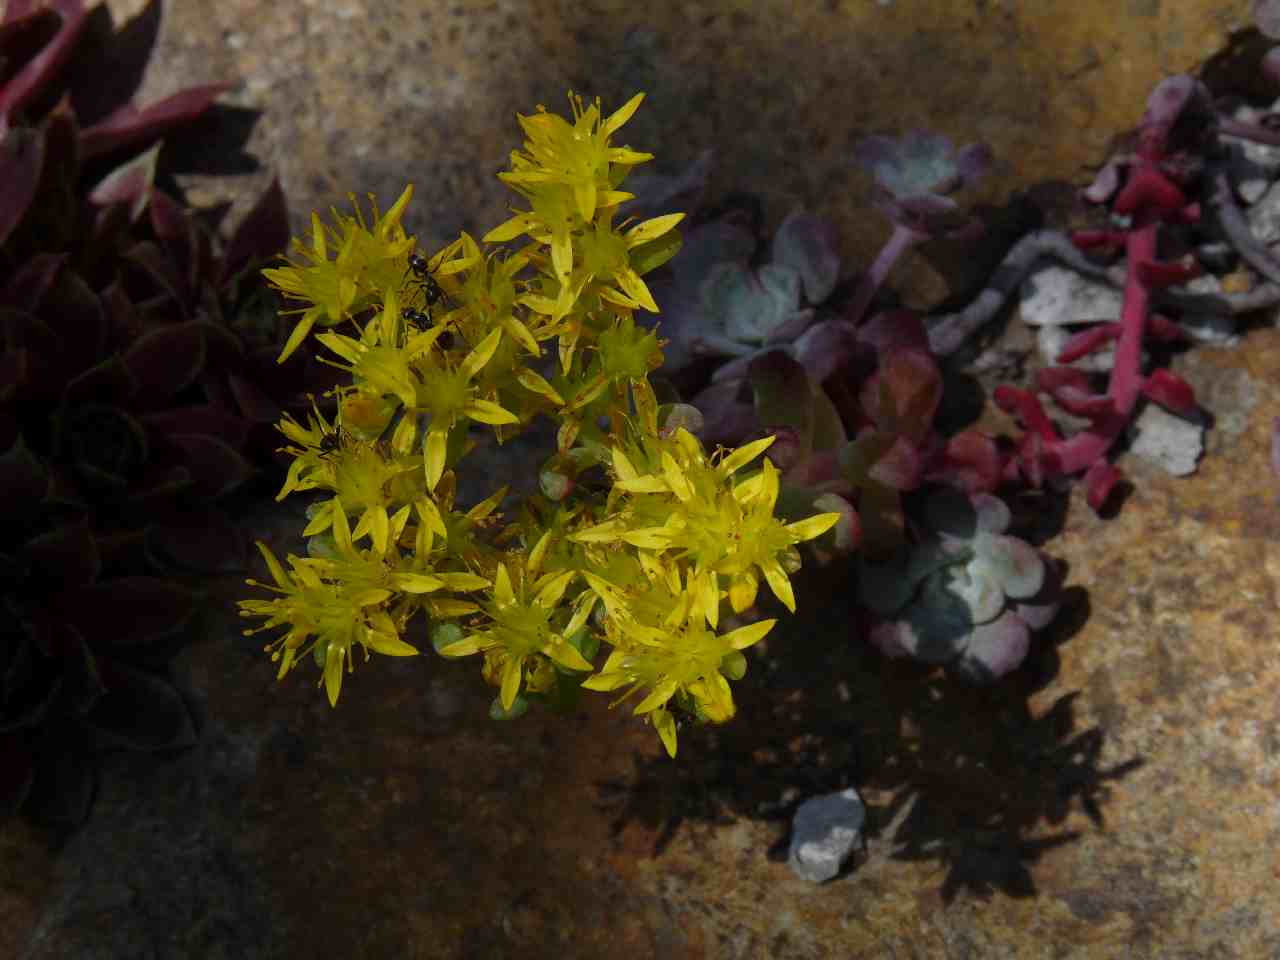 Sedum spathulifolium 'Purpureum'